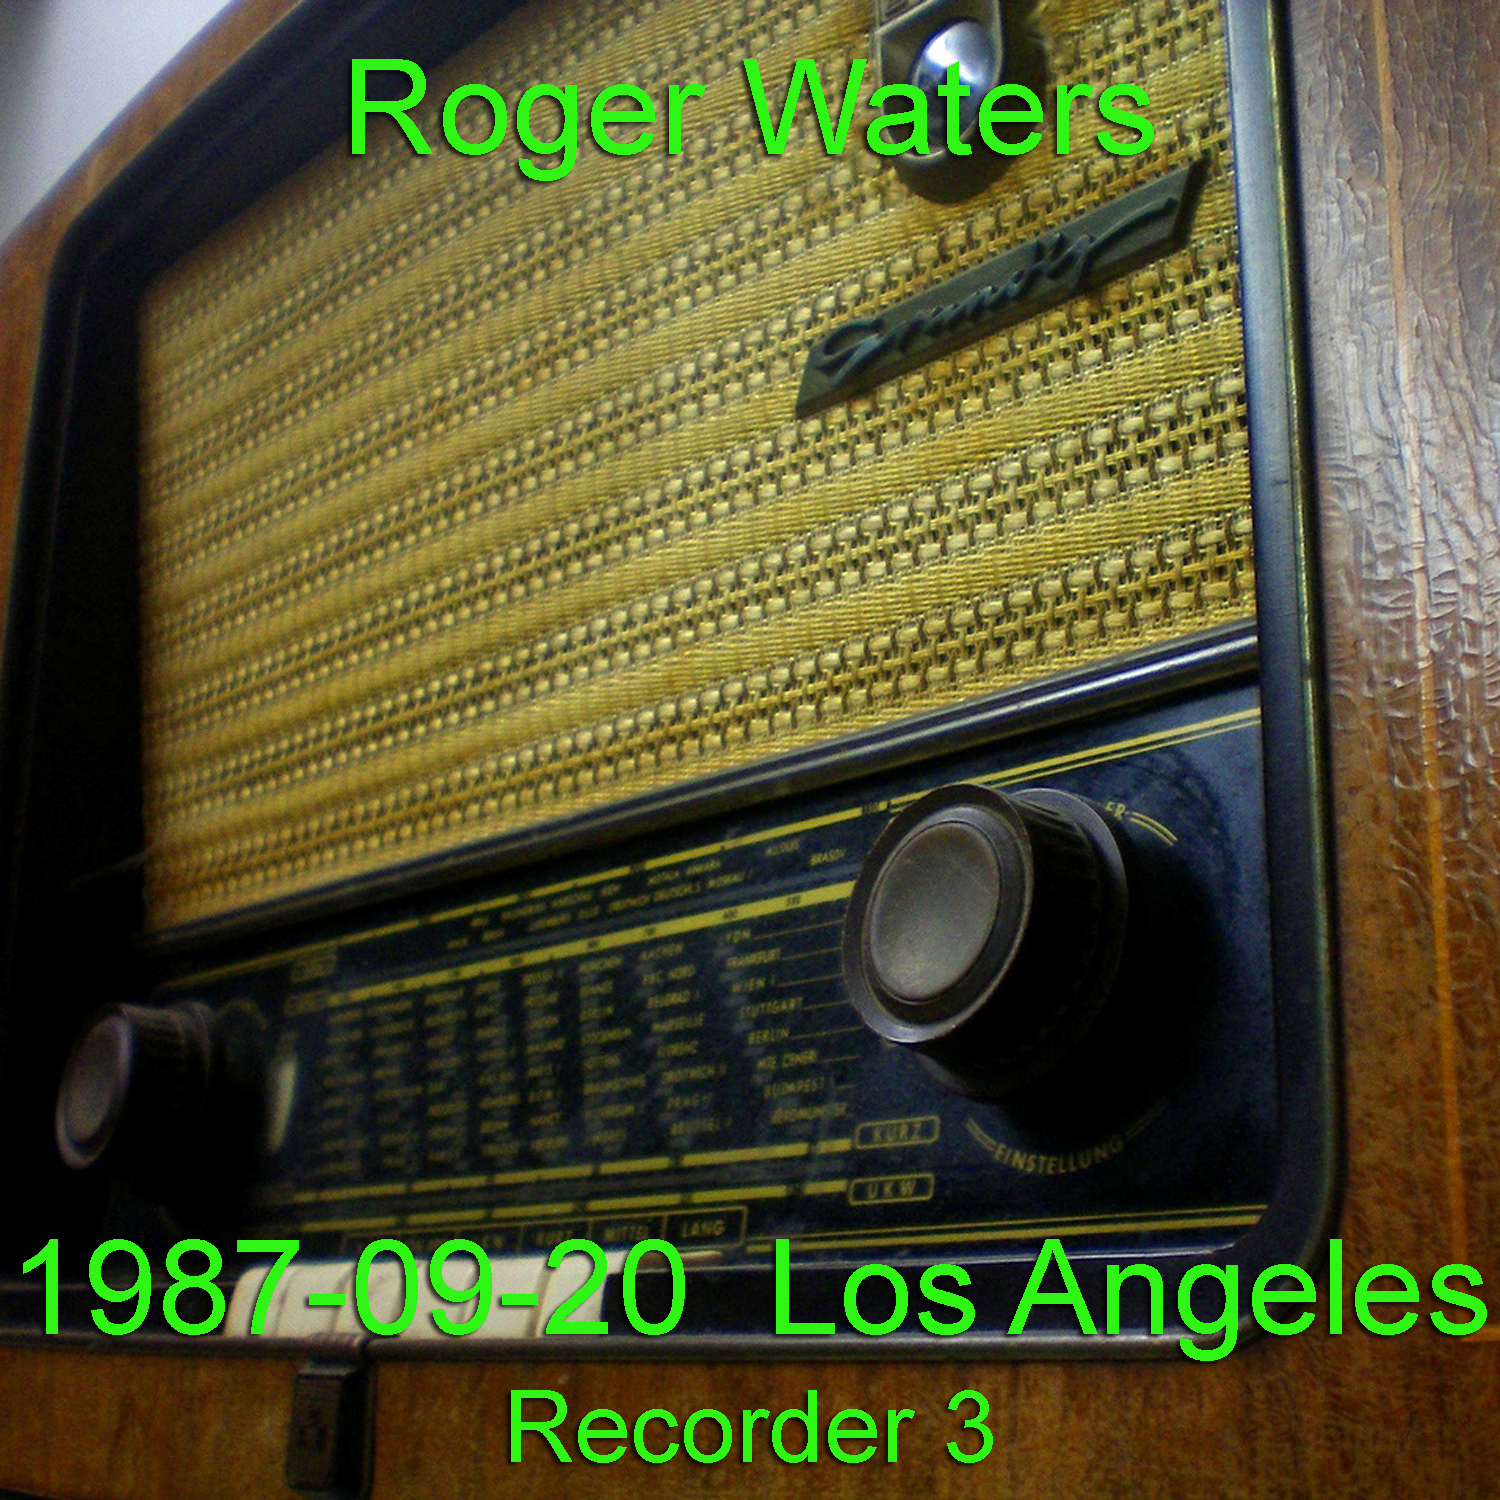 RogerWaters1987-09-20TheForumLosAngelesCA (2).jpg